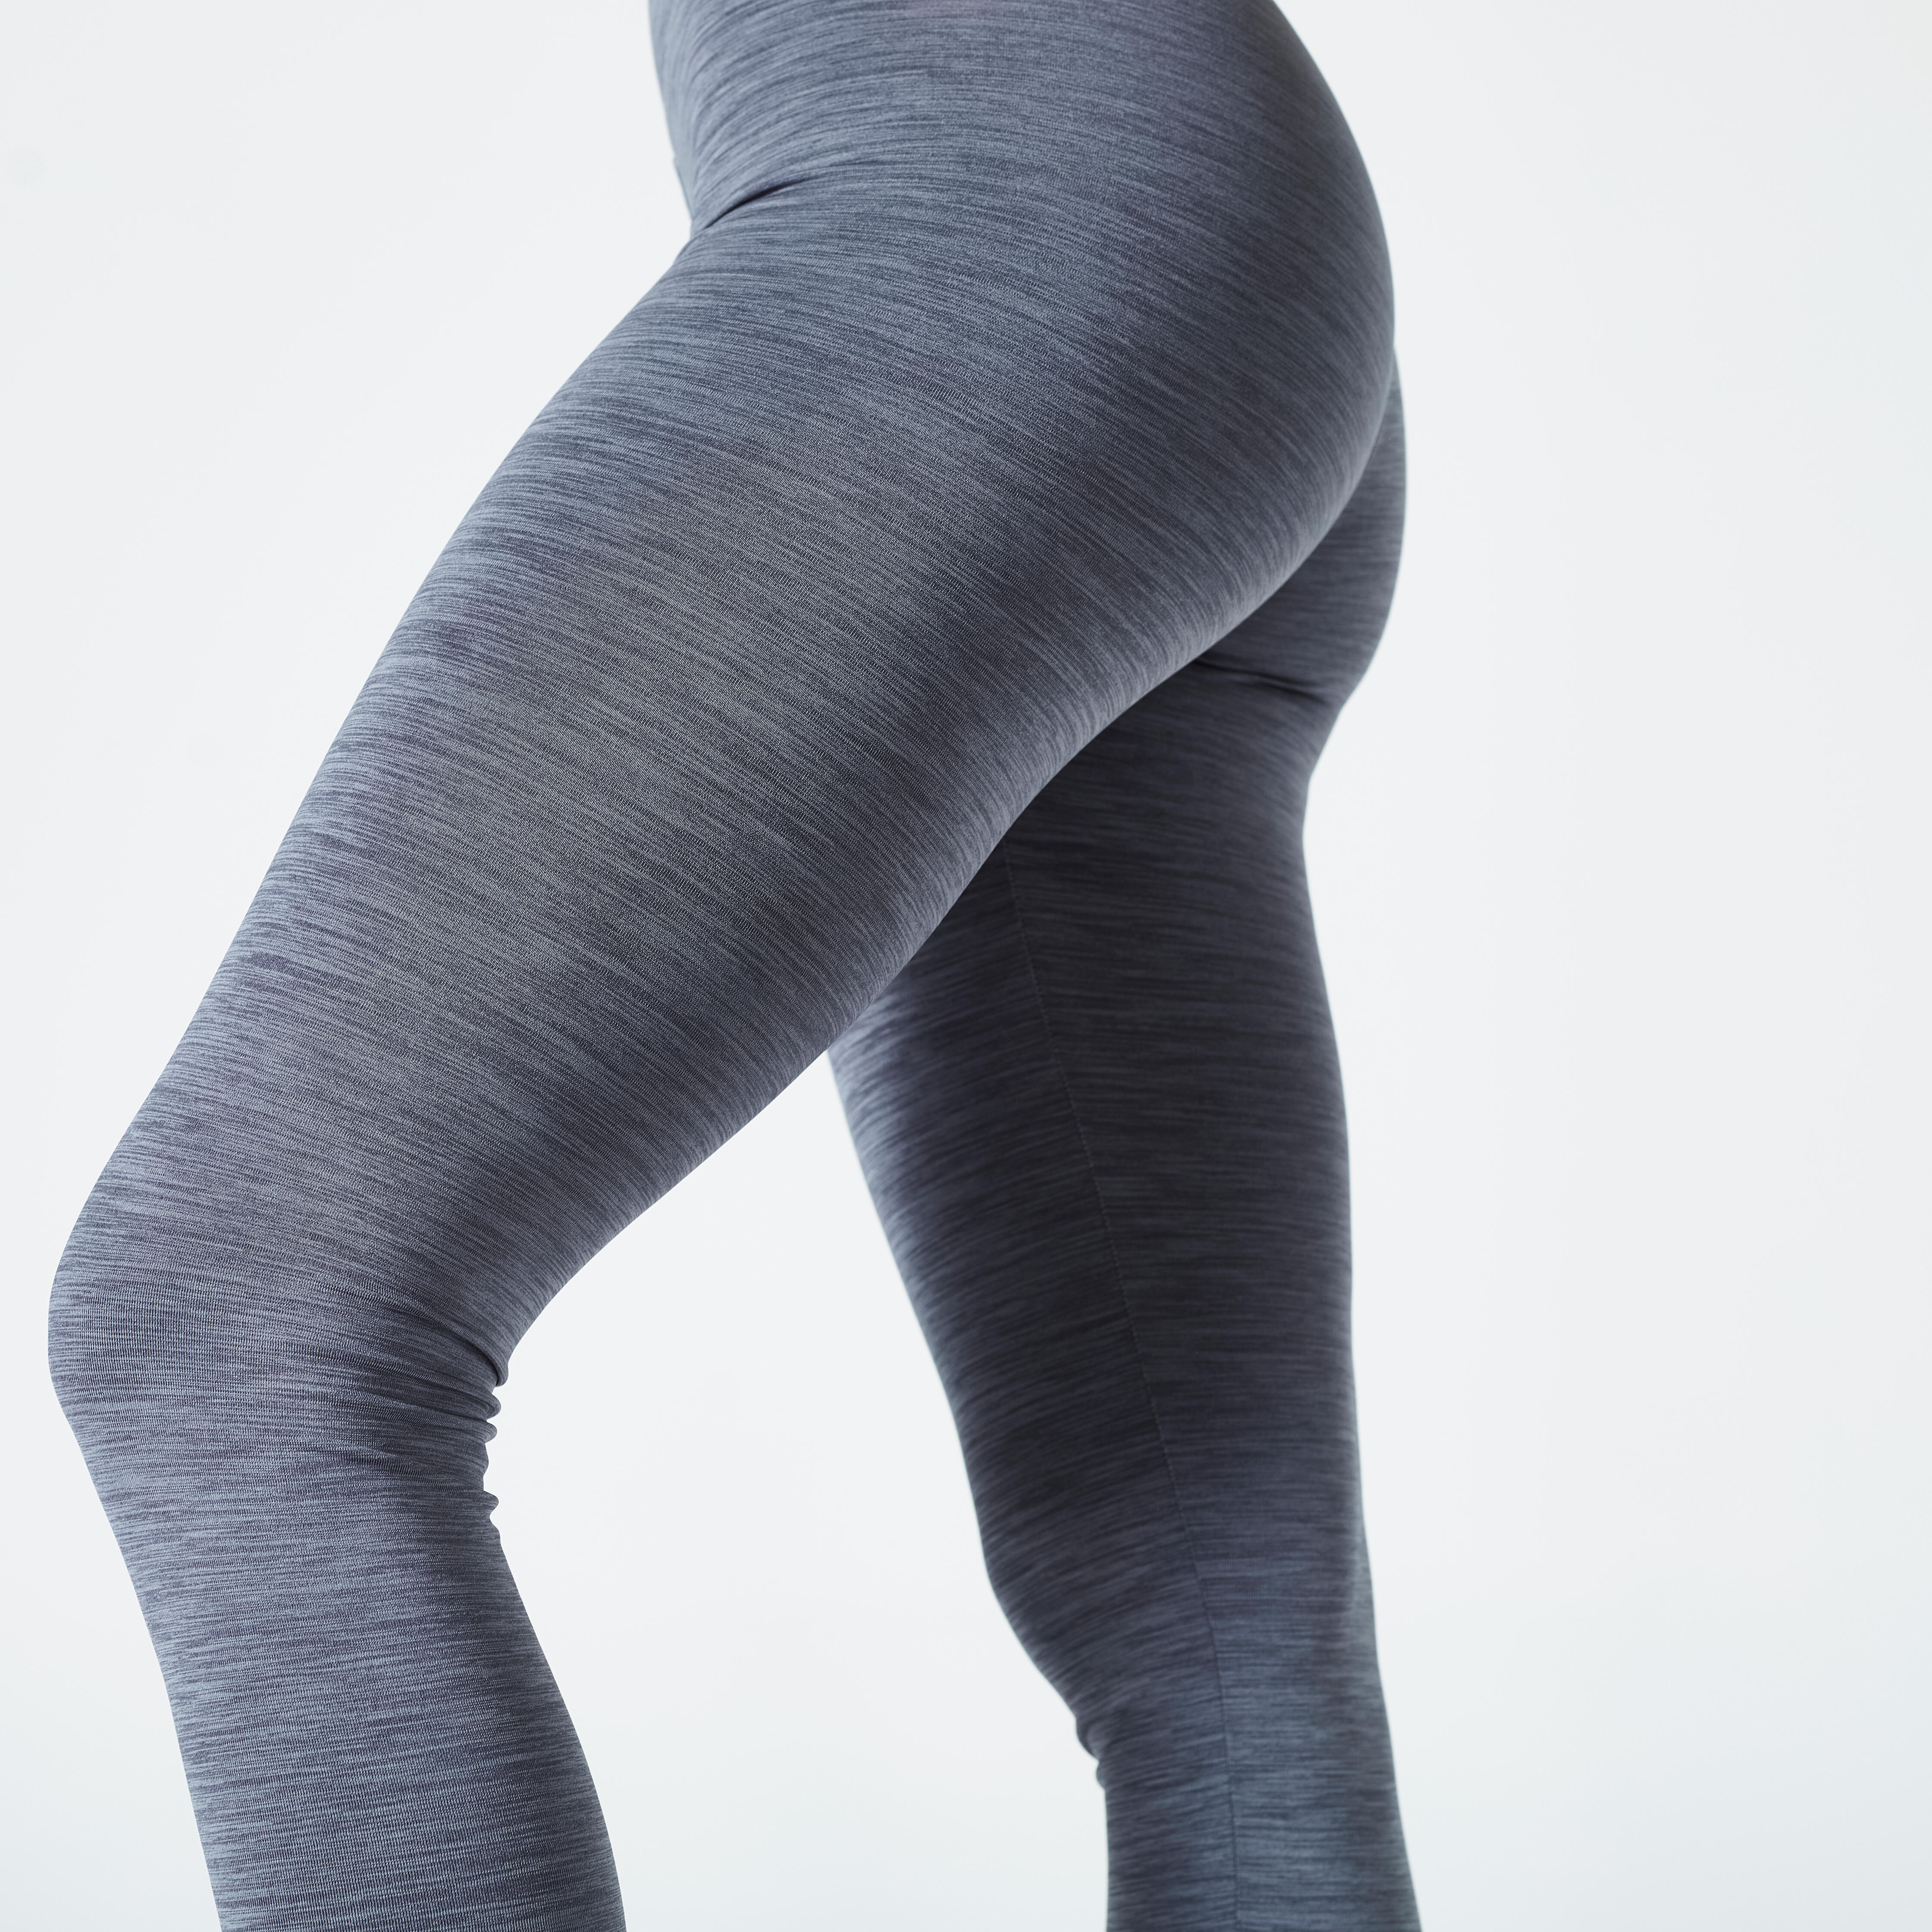 Legging de sport à taille haute femme – 100 gris - [EN] graphite grey -  Domyos - Décathlon